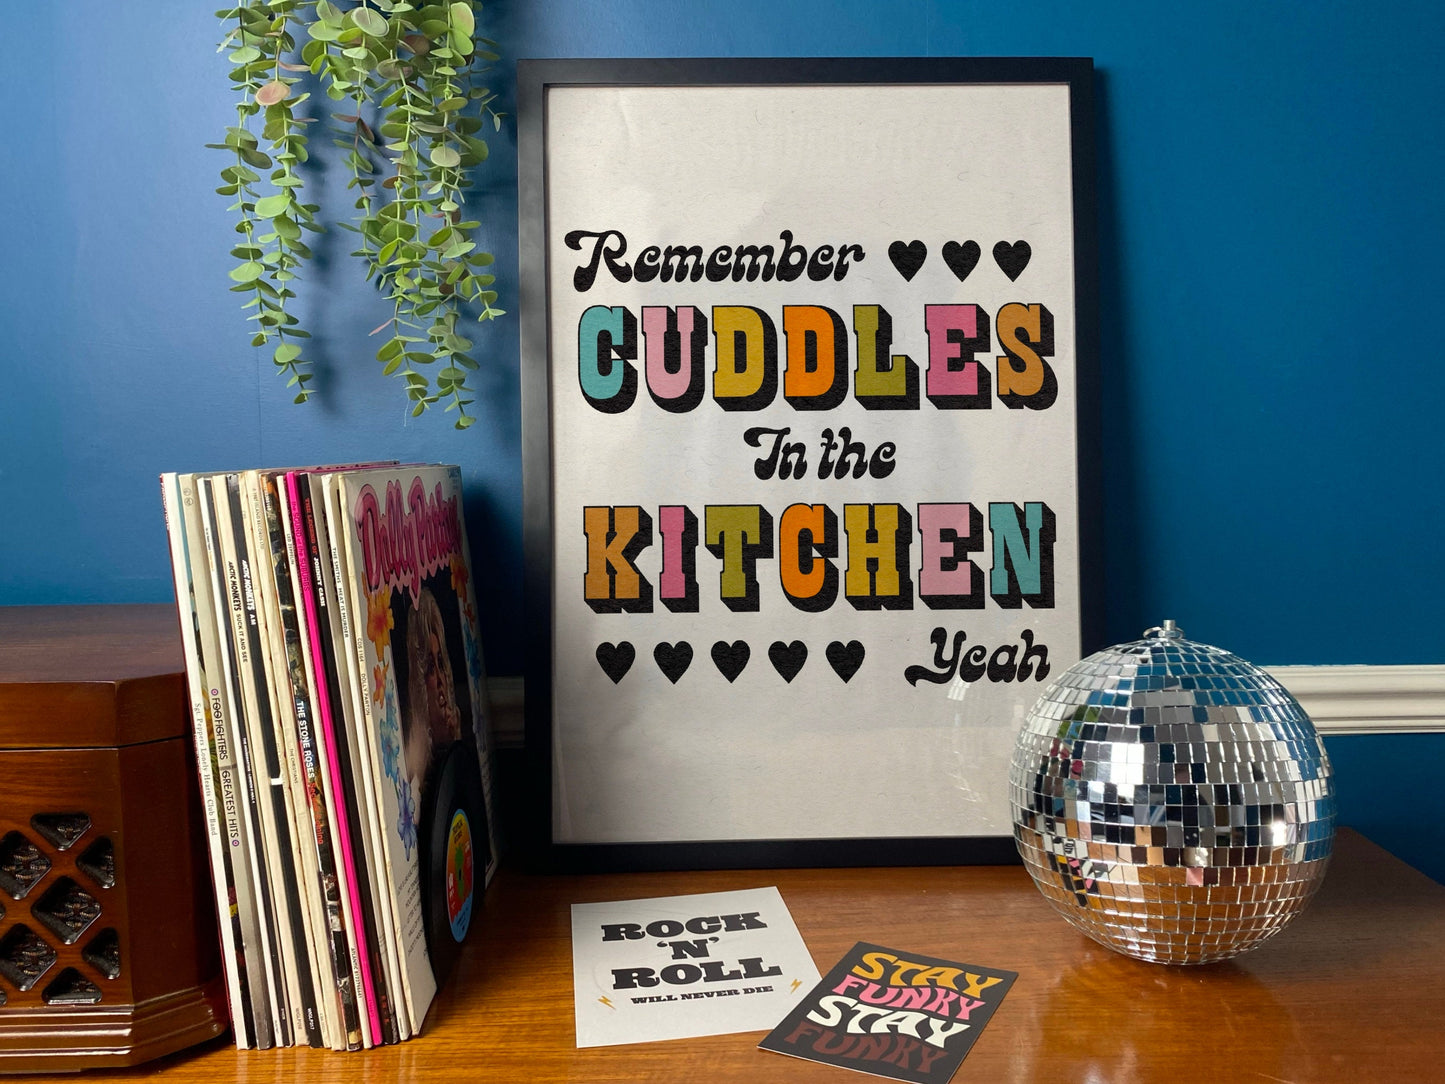 Cuddles in the Kitchen Print